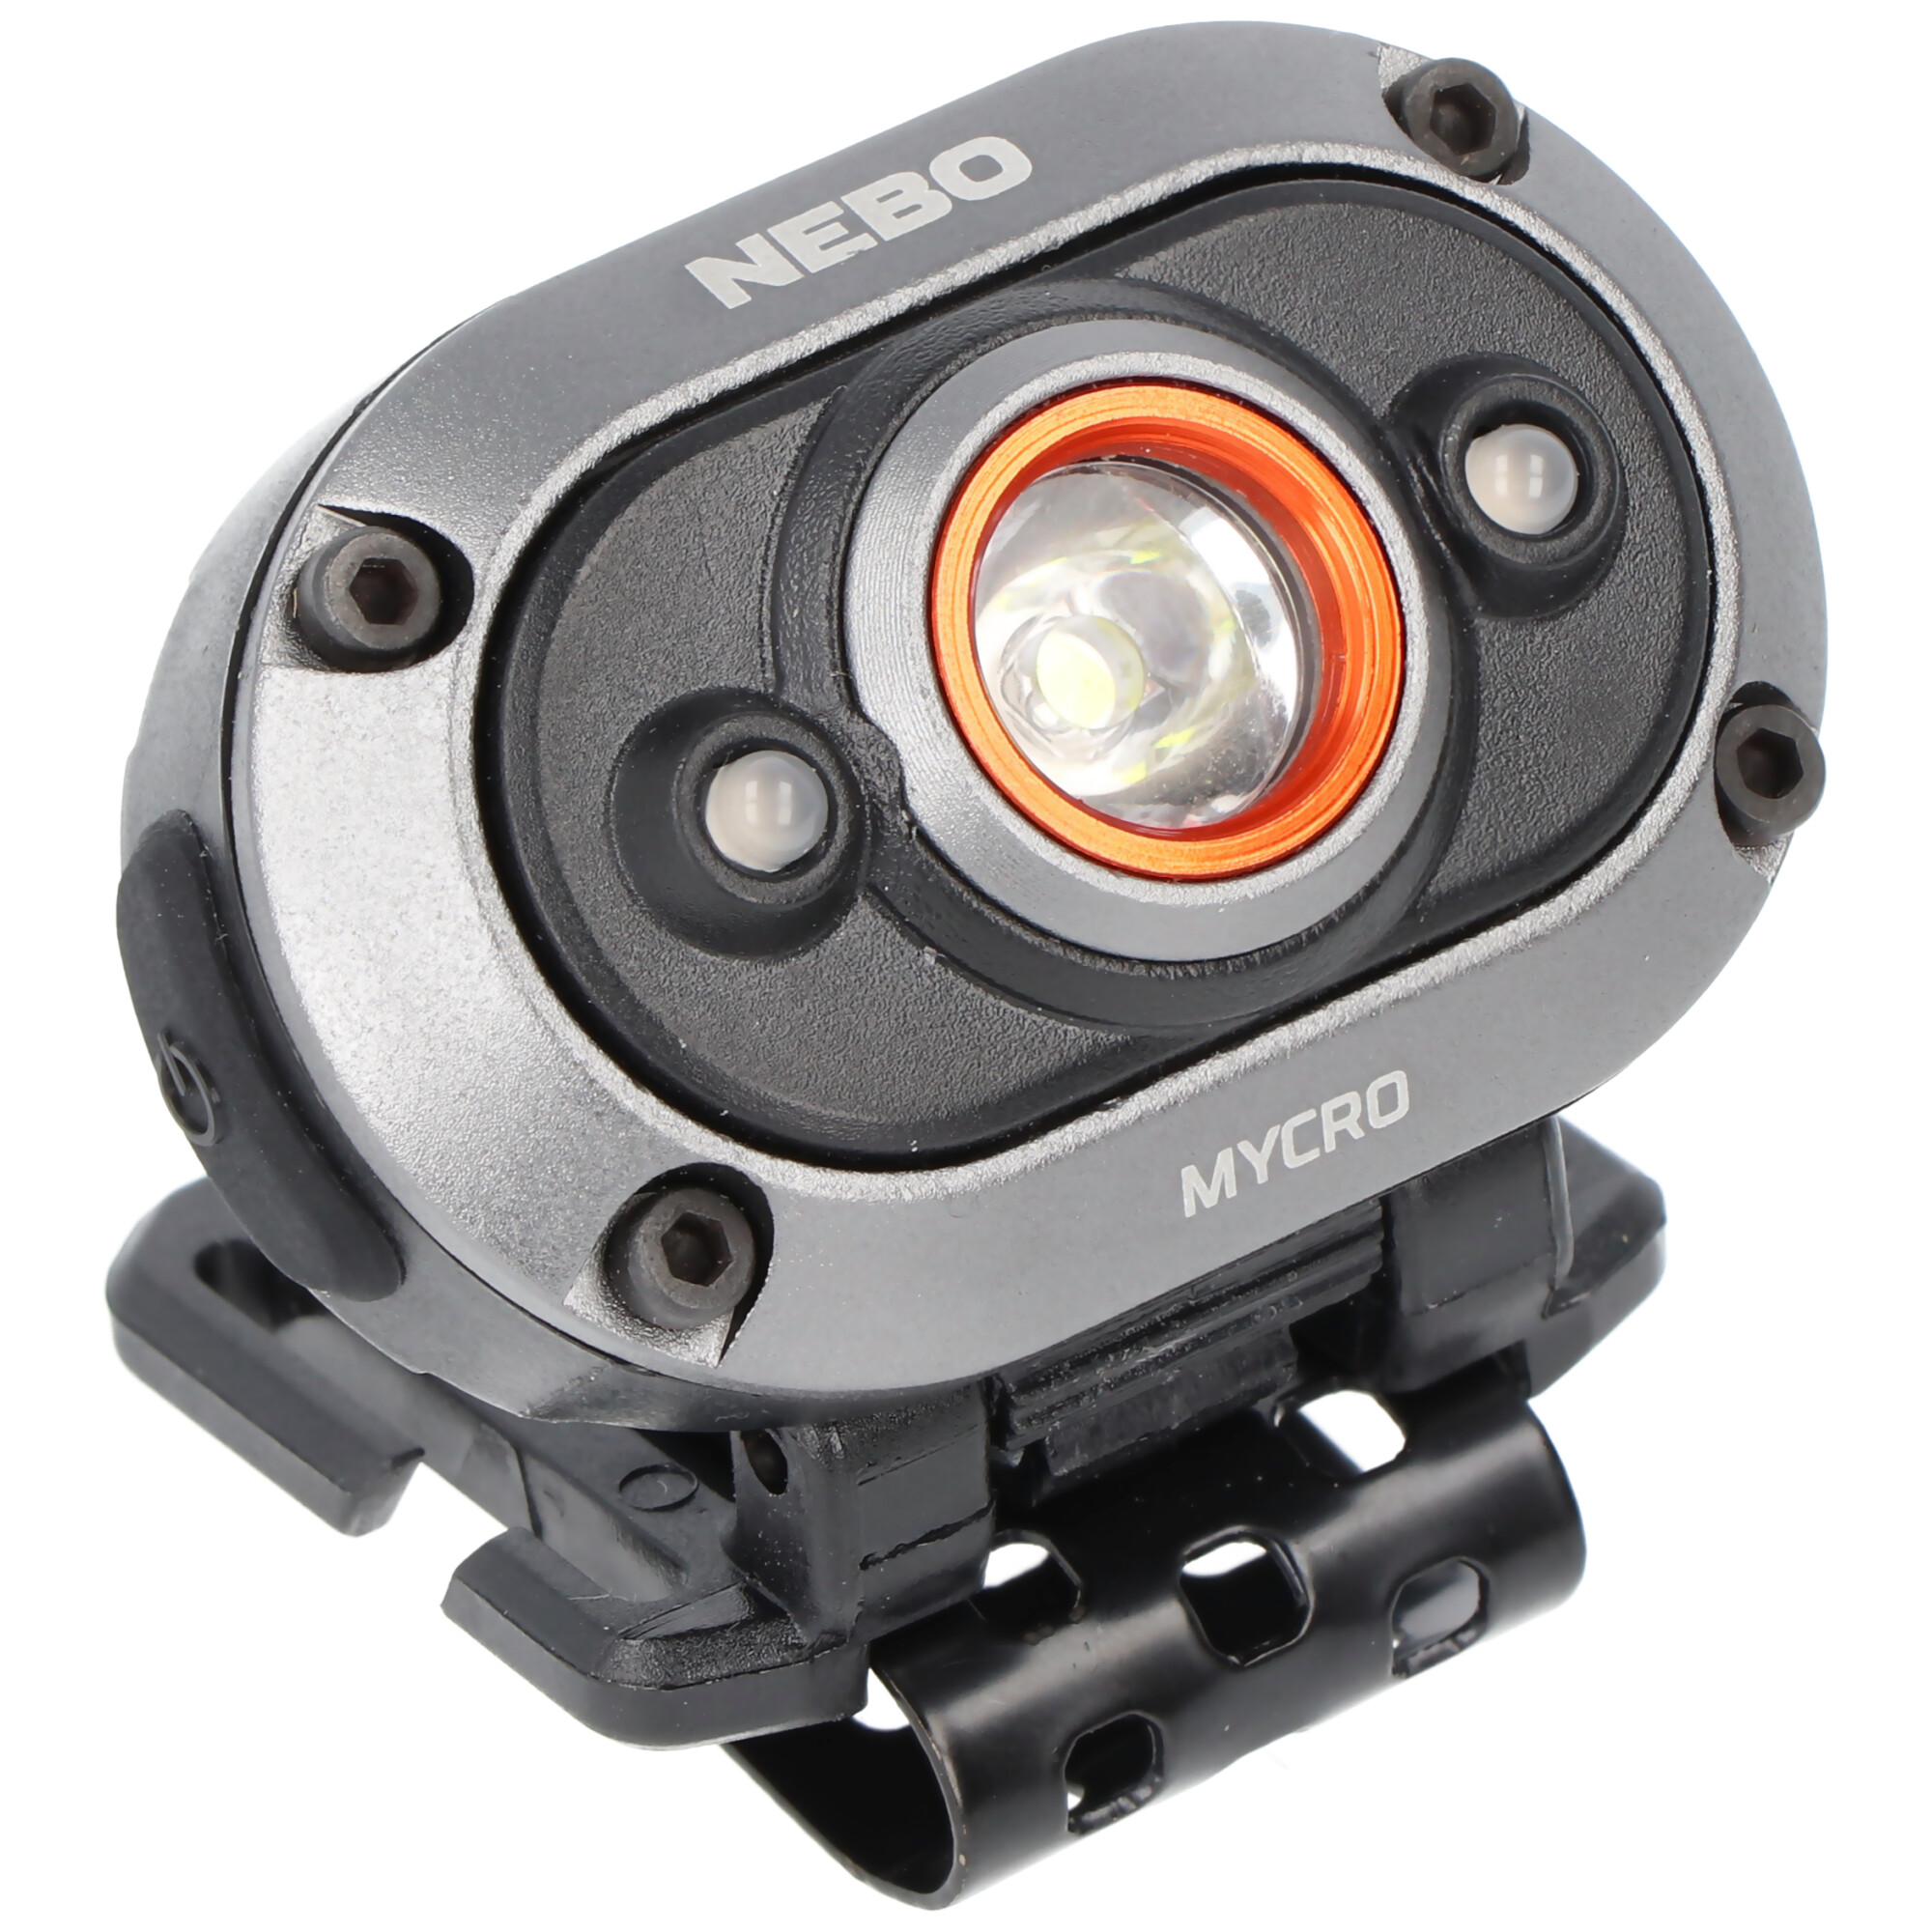 NEBO LED Stirnlampe MYCRO mit bis zu 400lm und 80m Leuchtweite integrierter Akku 3,7V 200mAh Li-Polymer